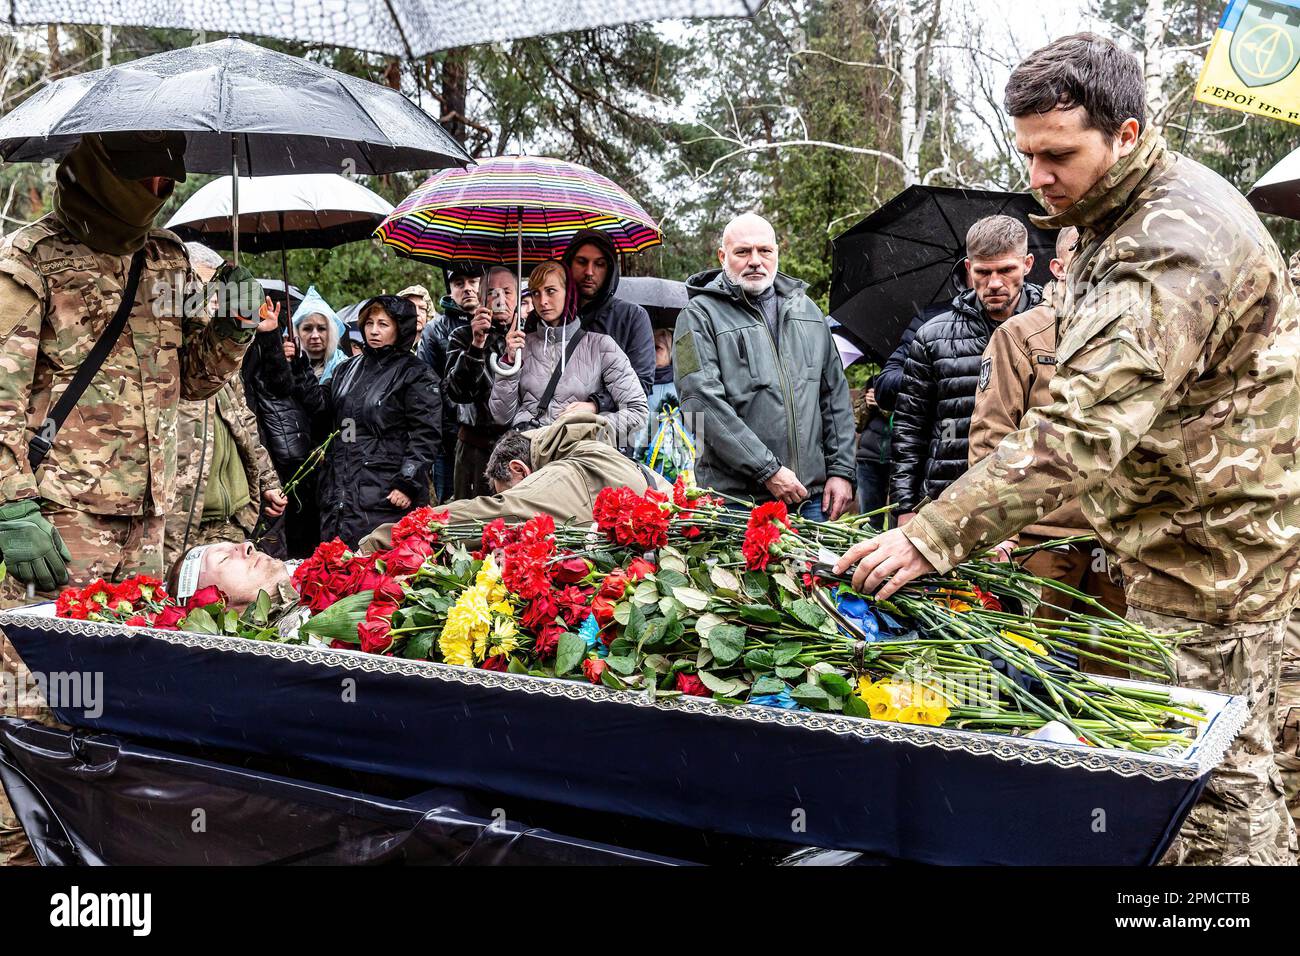 (HERAUSGEBER ANMERKUNG: Bild zeigt Tod) Freunde und Familie legten Blumen während einer Beerdigung von Evgeny Yakovlev, 42, einem Soldaten, der von russischen Streitkräften an der Ostukrainischen Front in einem Kampf getötet wurde, auf dem Lisove Friedhof in Kiew. Auf dem Lisove Friedhof sind die meisten der gefallenen Armeeangehörigen aus Kiew begraben. Da die Invasion der Ukraine in vollem Umfang durch die russischen Streitkräfte andauert, verursacht der Kampf im Osten der Ukraine eine sehr hohe Zahl von Opfern, obwohl die genauen Zahlen unbekannt sind. Die Ukraine bereitet sich auf eine Frühjahrsoffensive zur Rückeroberung des von Russland besetzten Landes vor. Stockfoto